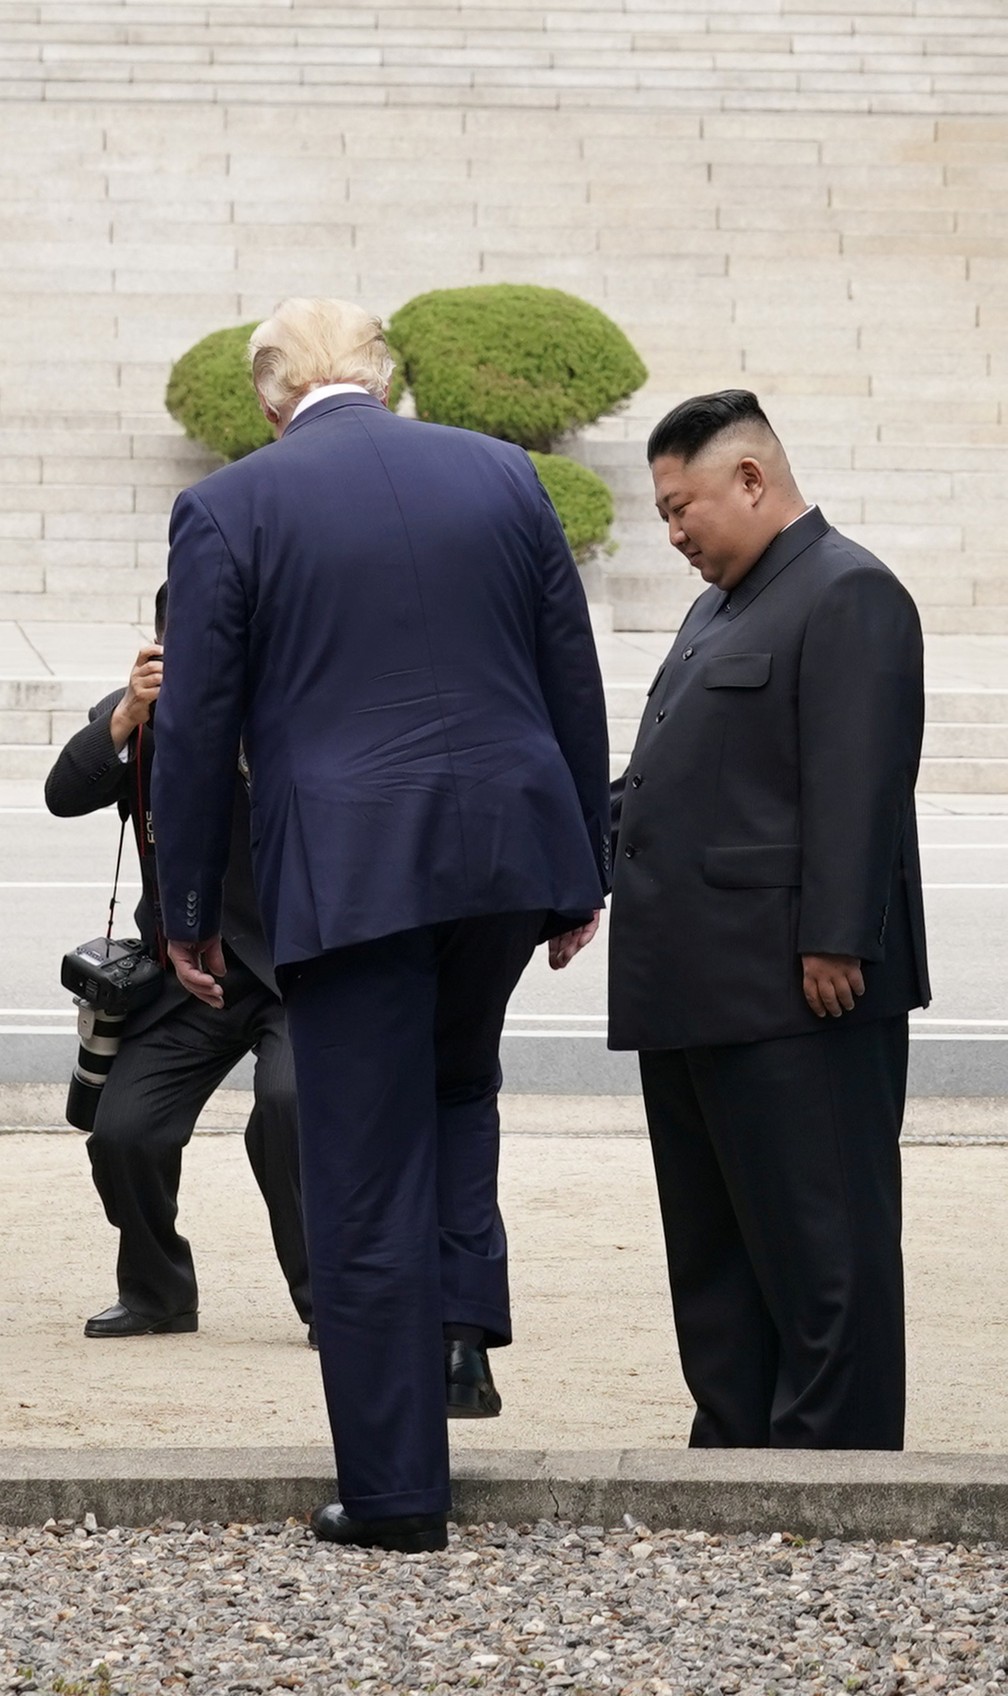 2019-06-30t071746z-1135747002-rc157627bad0-rtrmadp-3-northkorea-usa-southkorea Trump cruza a fronteira e se torna 1º presidente dos EUA a entrar na Coreia do Norte